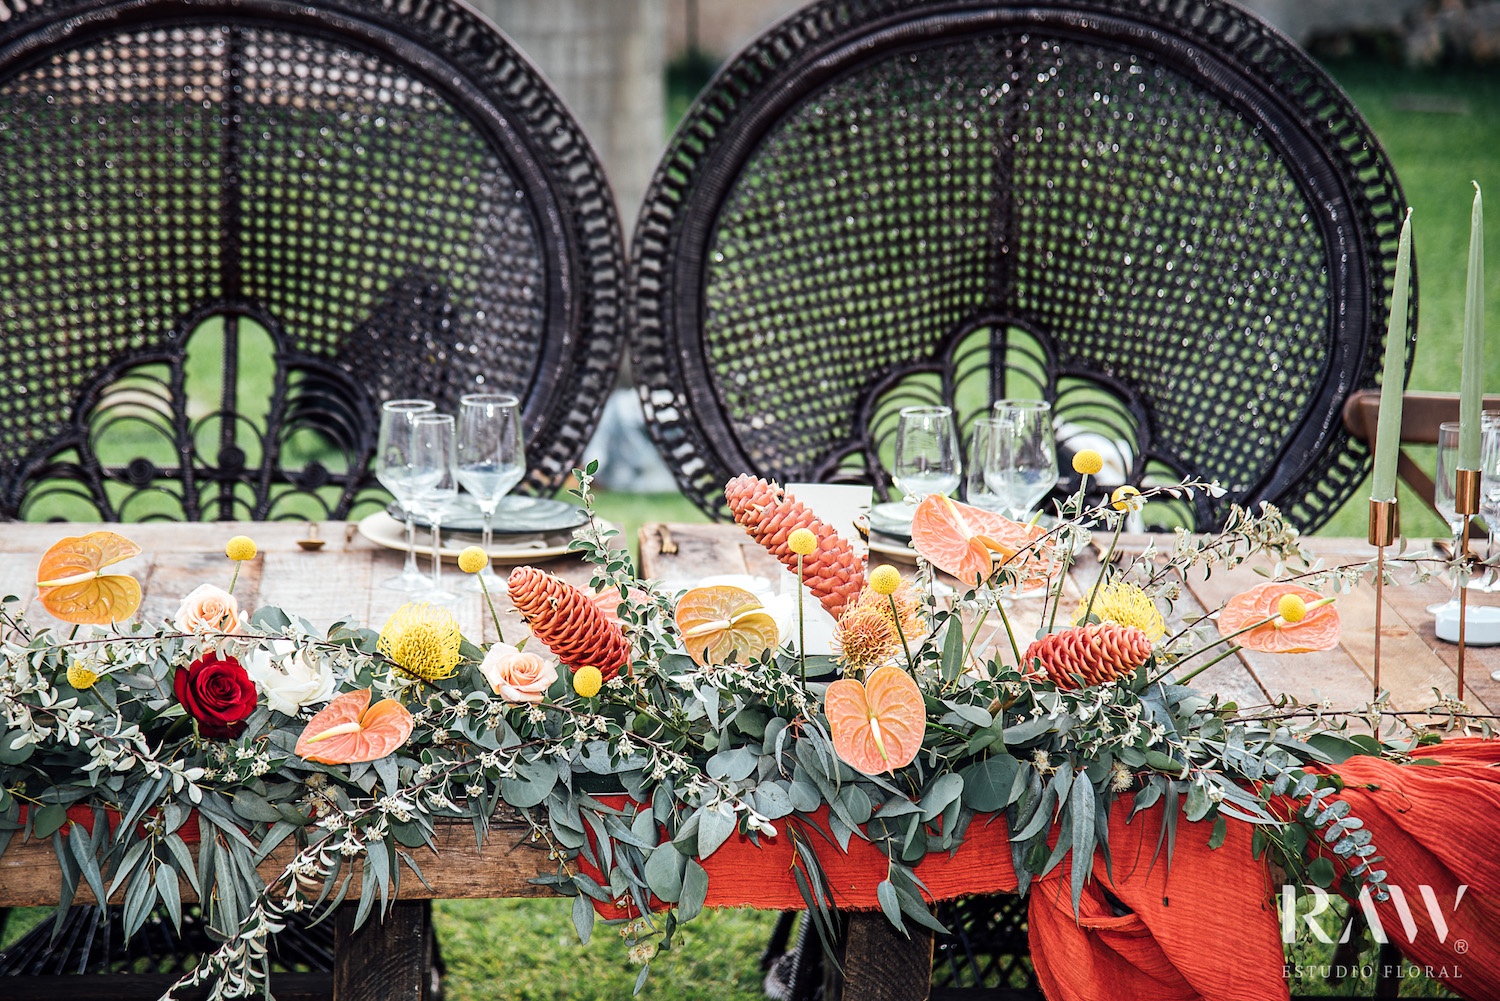 Am Tisch des Hochzeitspaares Anthurium Blumen